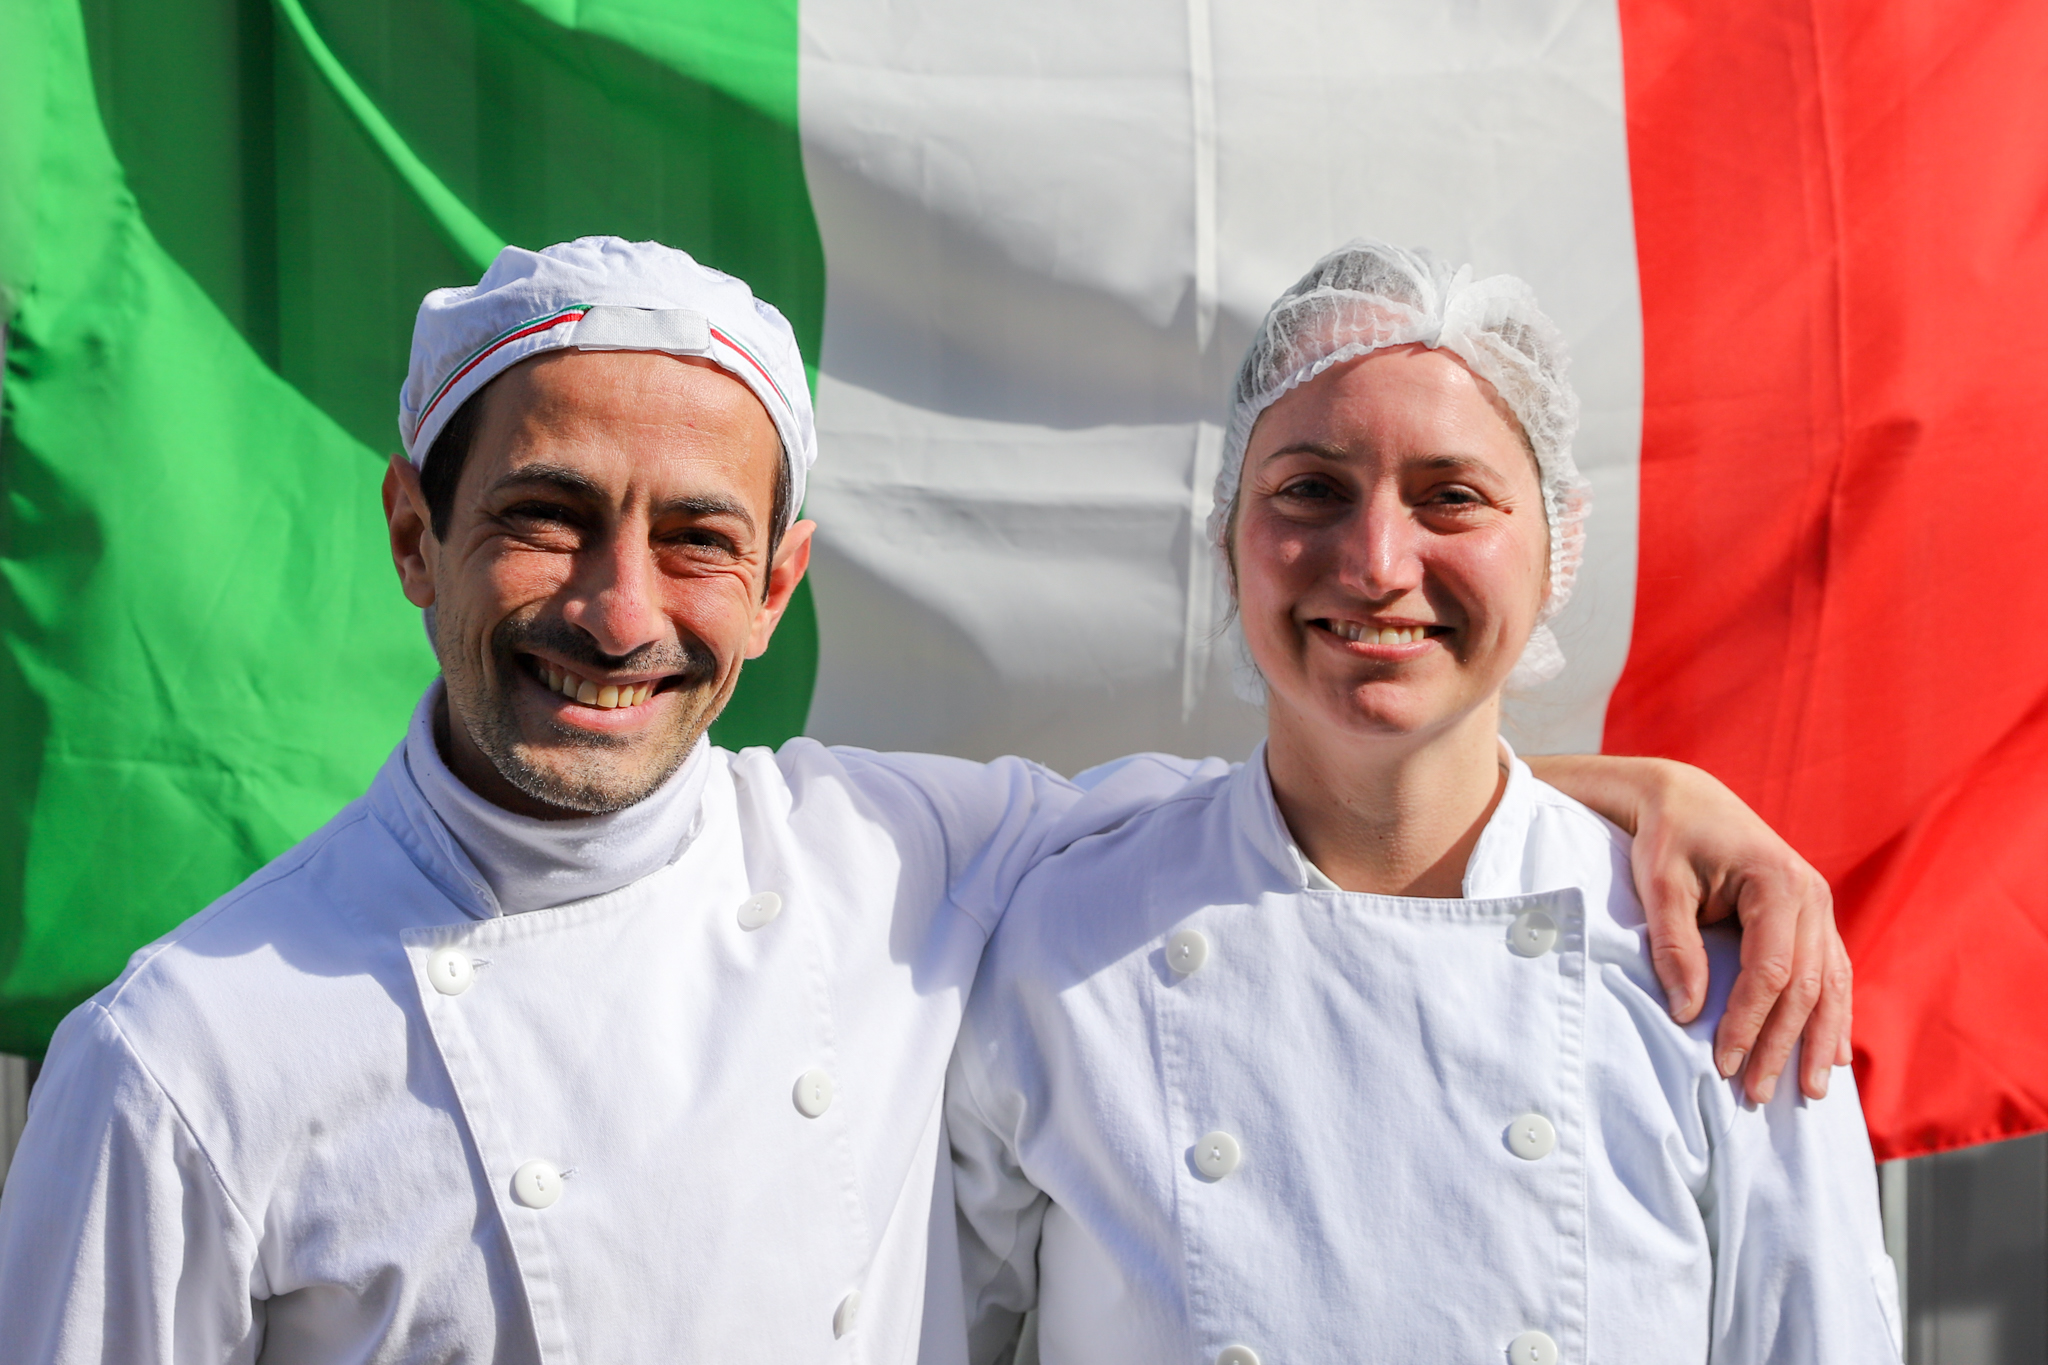 kaasmakers roberto en ornella met de italiaanse vlag